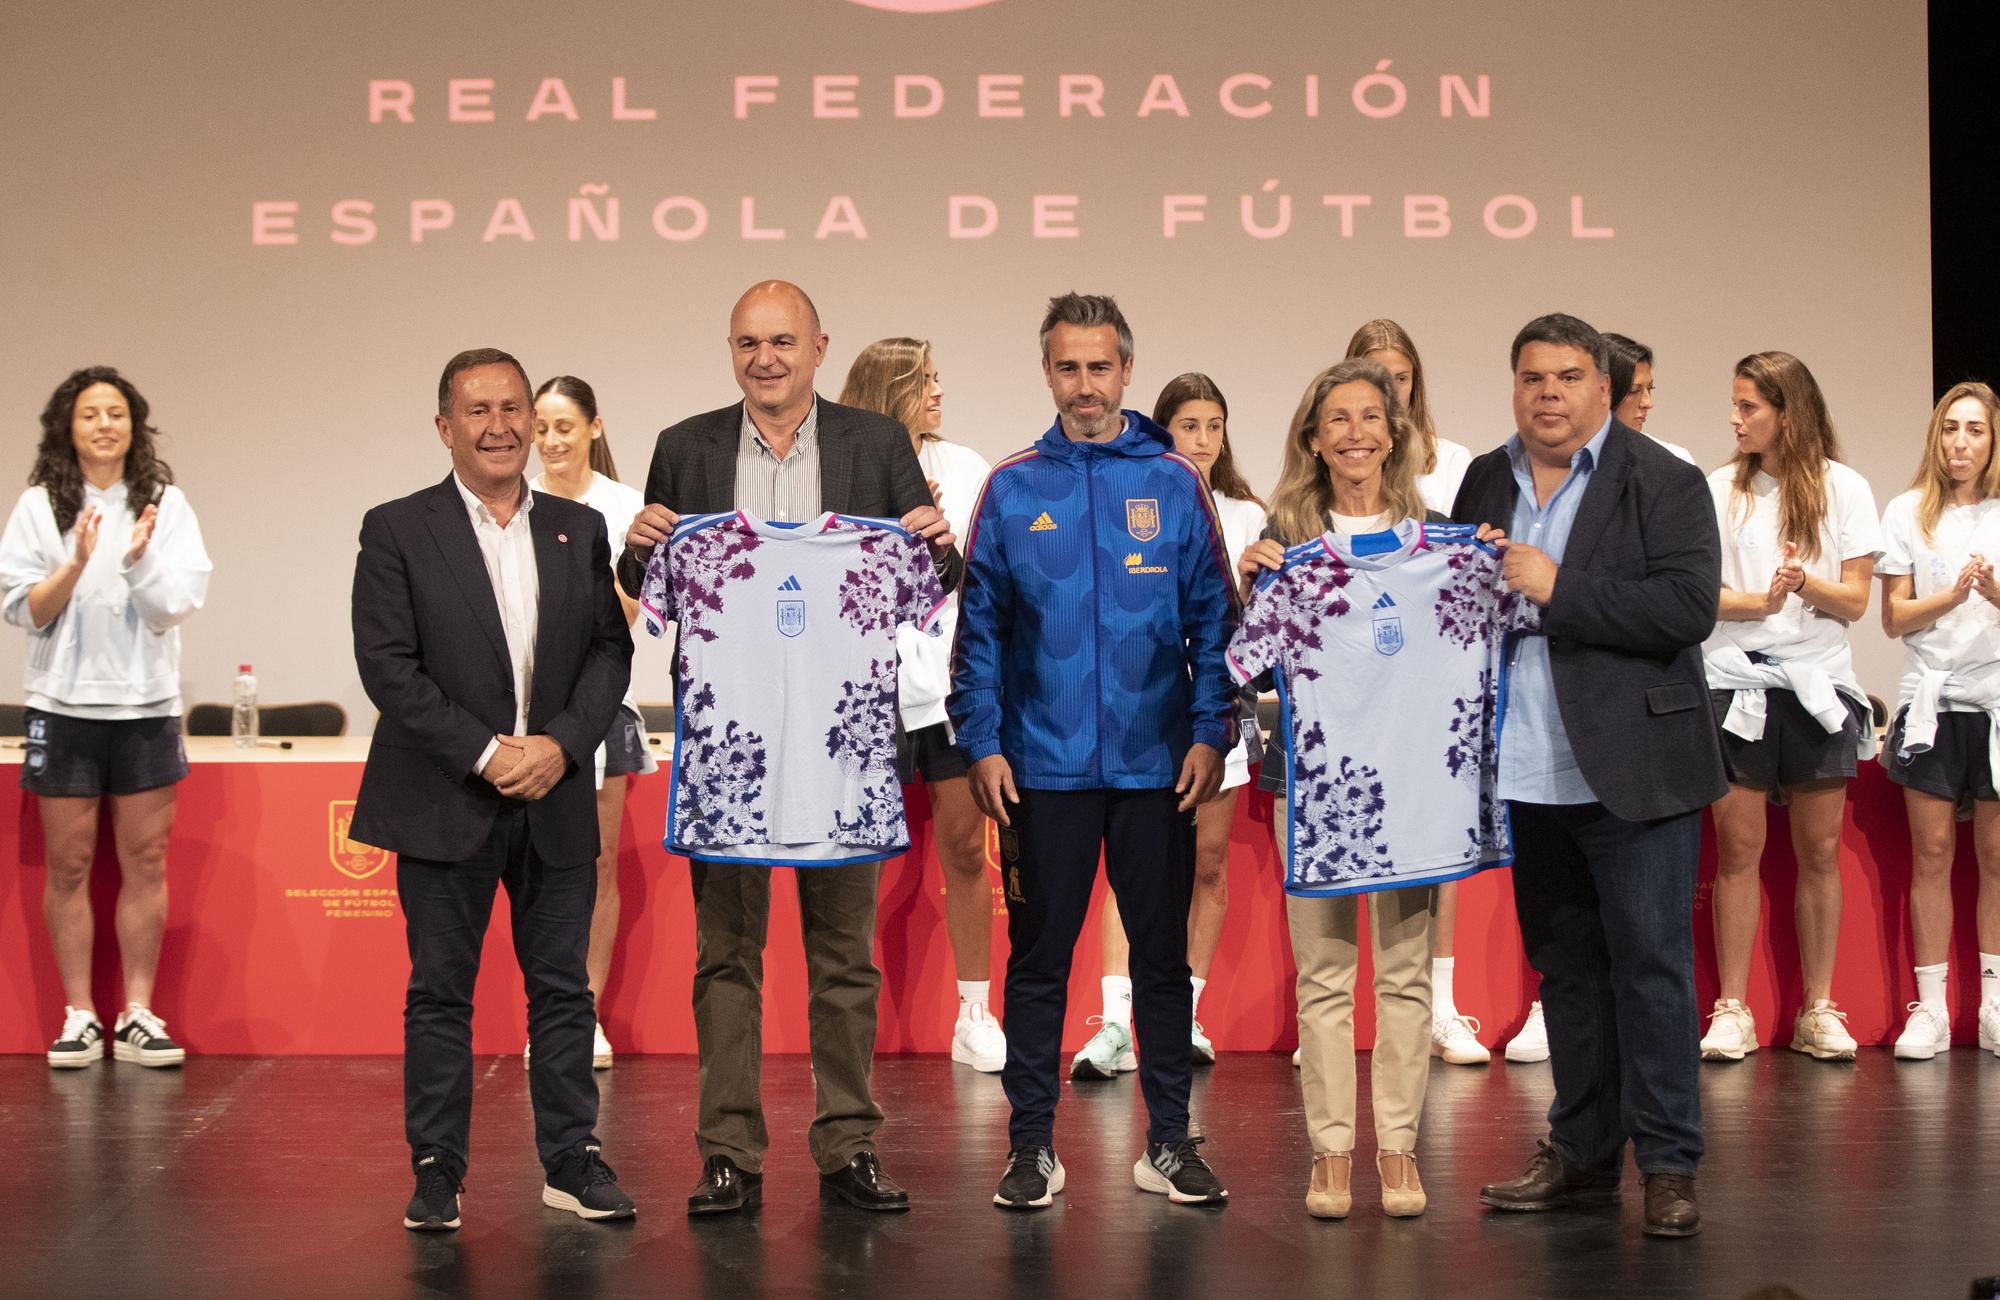 Galería de imágenes de la visita a Ibiza de la Selección Española Femenina de fútbol